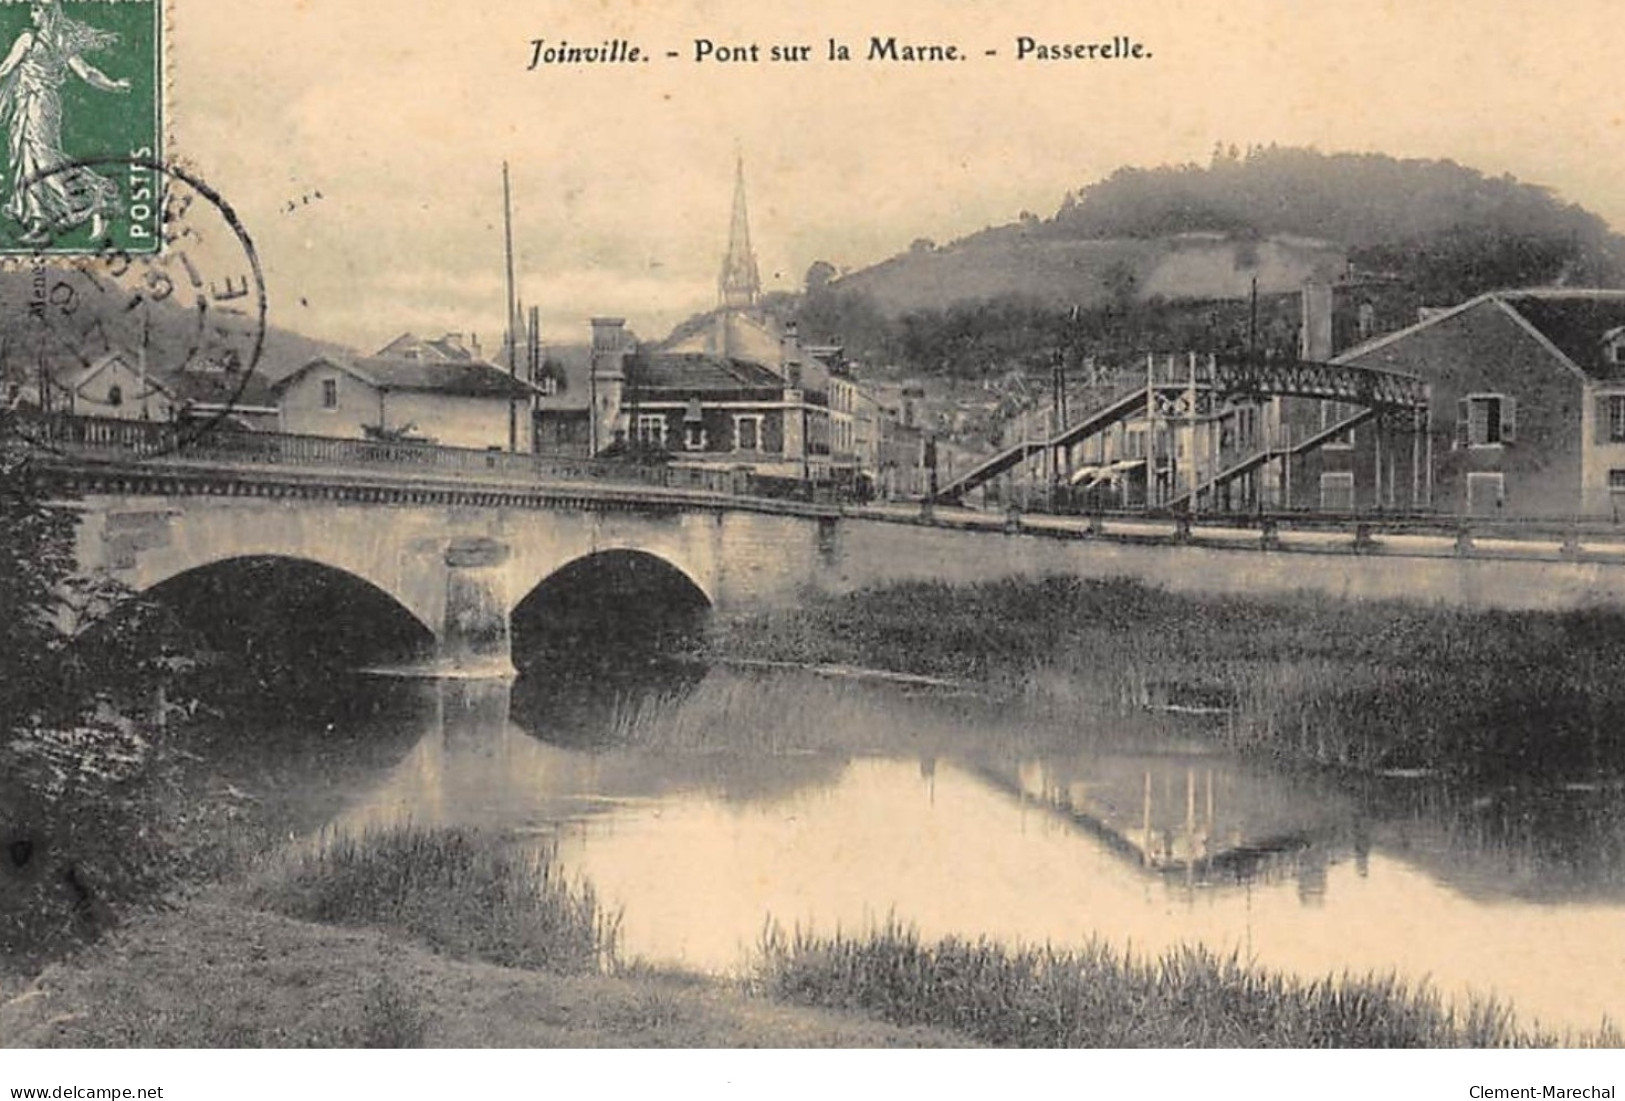 JOINVILLE : Pont Sur La Marne, Passerelle - Tres Bon Etat - Joinville